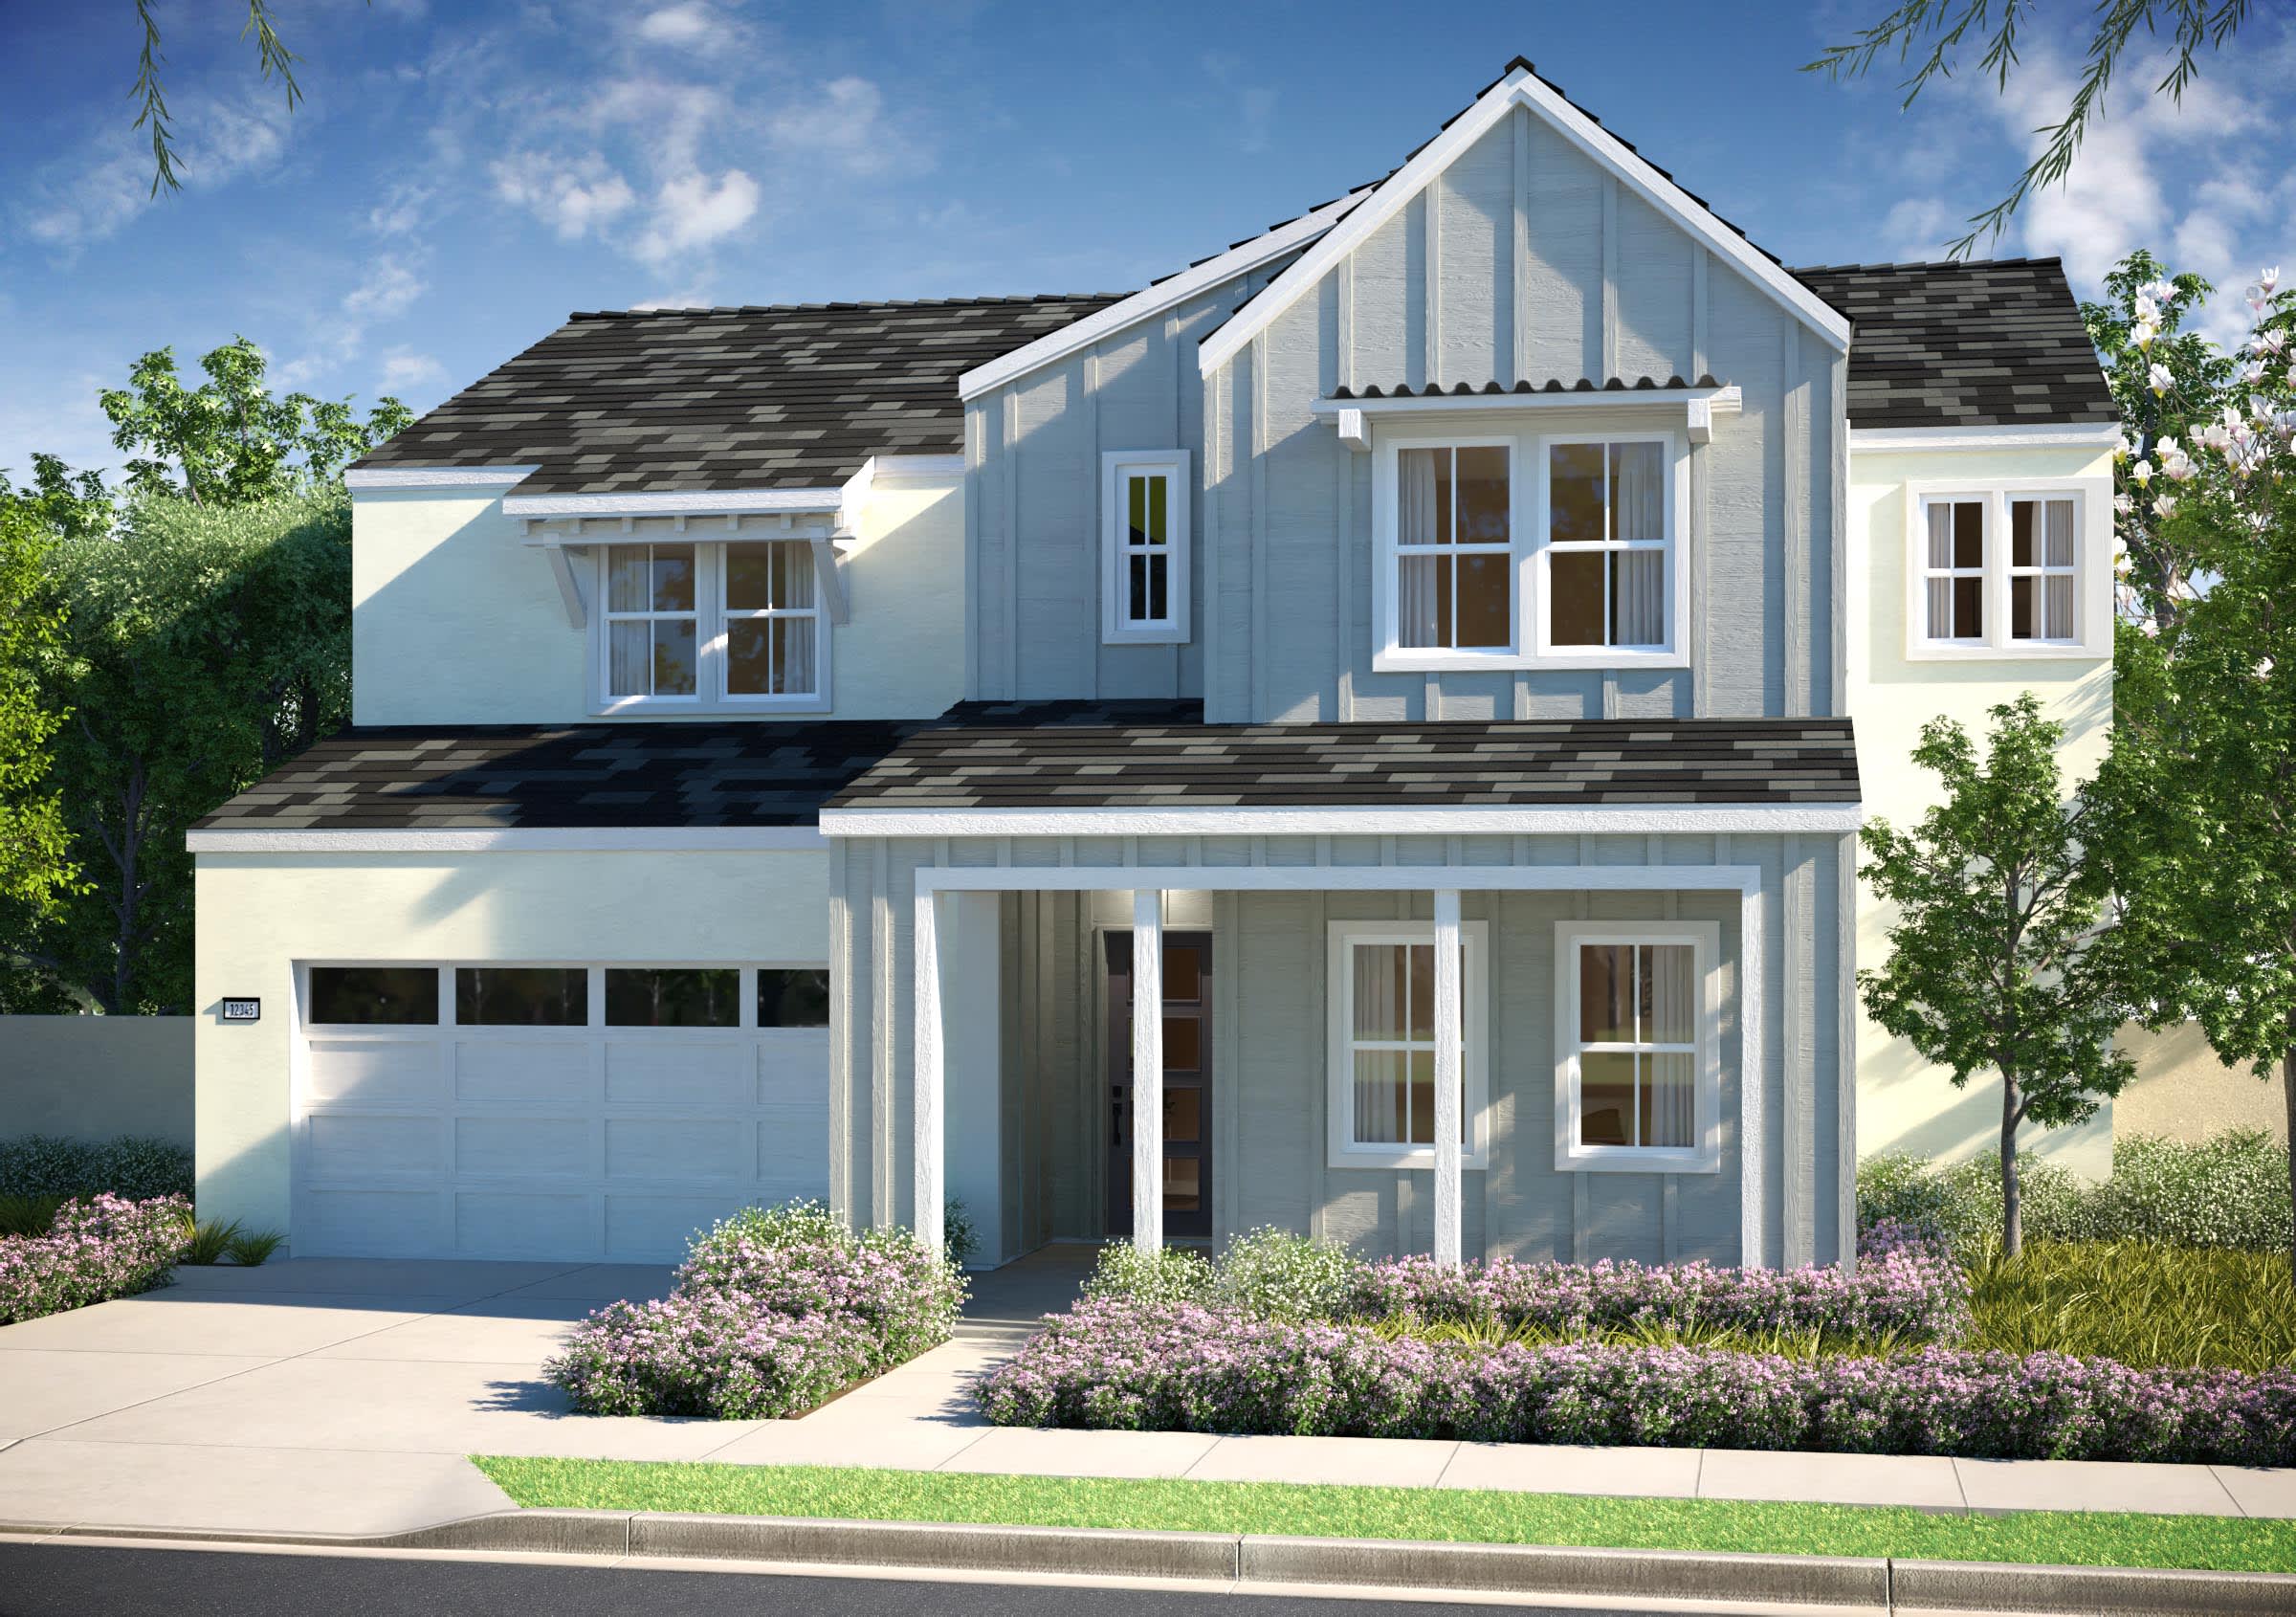 Plan 2 - Elevation C | Elmwood | ShadeTree | New homes in Ontario, California | Landsea Homes